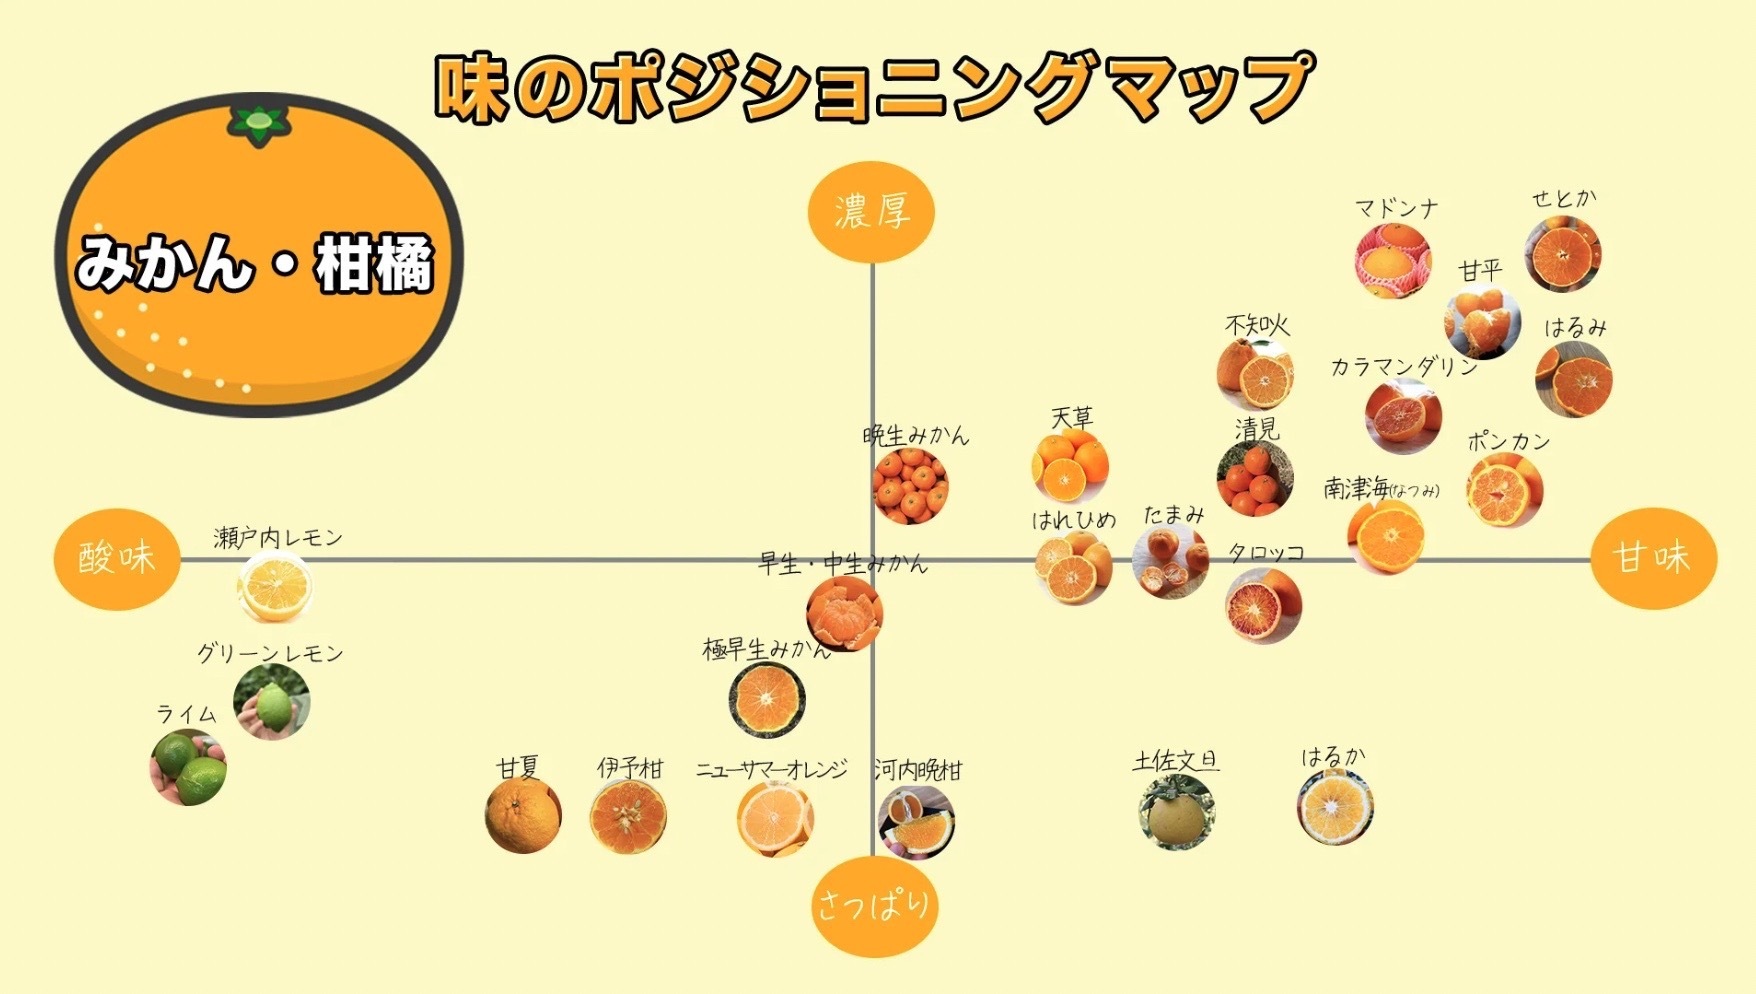 産地直送・お取り寄せ通販サイト「トドクヨ」が
柑橘品種の糖度を徹底調査しポジショニングマップと表を公開！
10月から5月頃にかけて様々な品種を販売開始